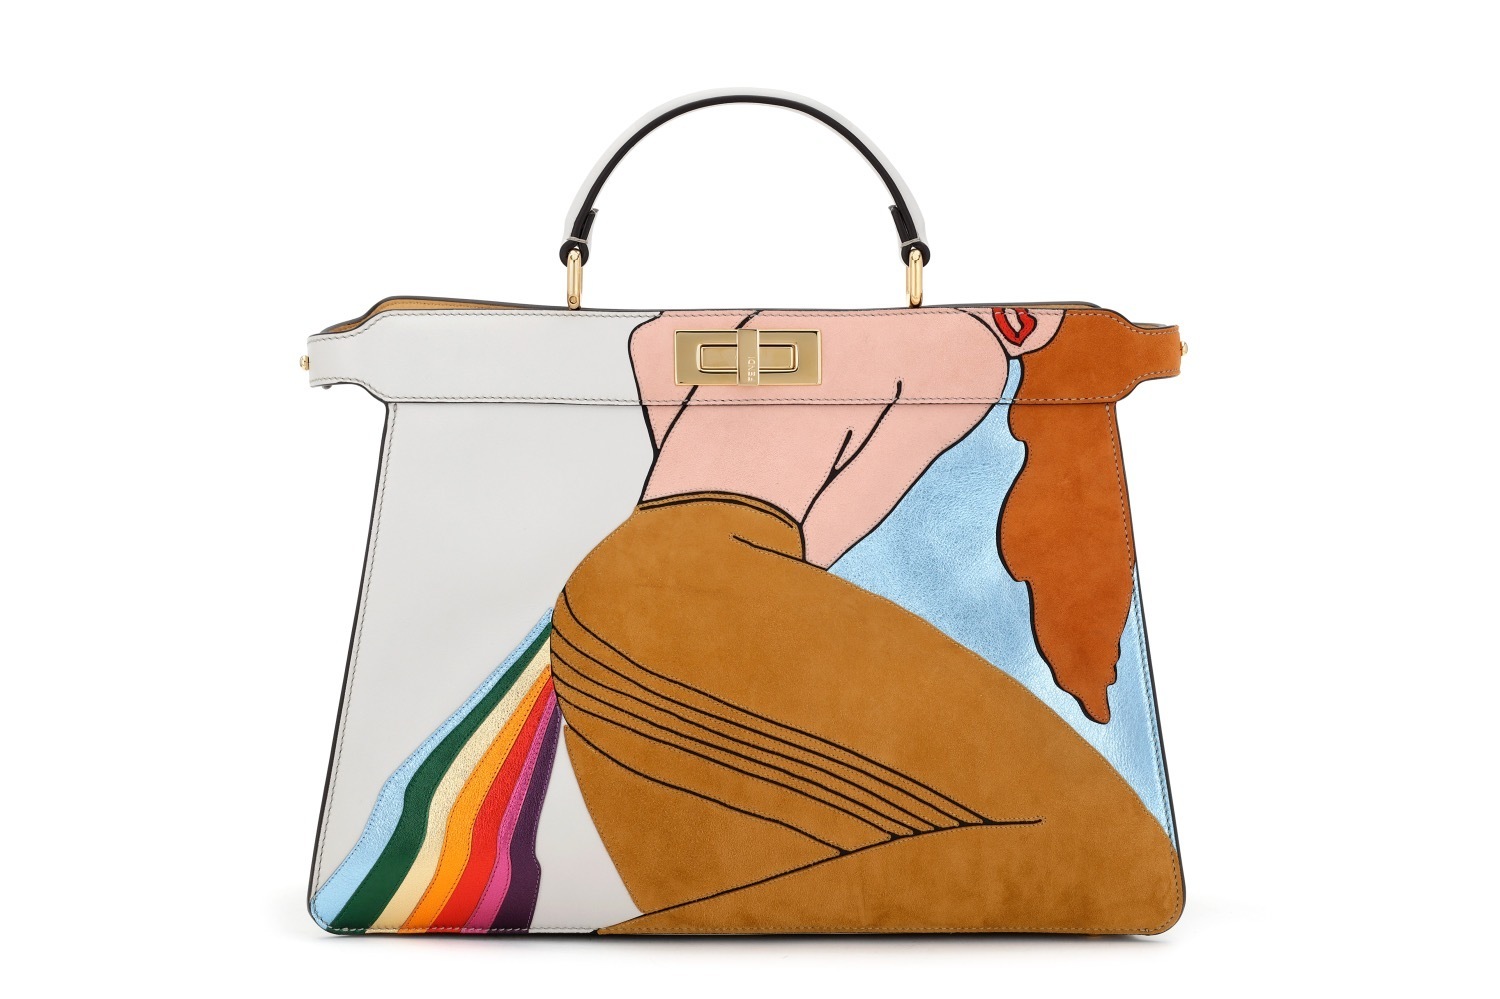 フェンディ 女性と虹 のイラストを表現した ピーカブー バッグ 伊勢丹新宿店限定で ファッションプレス